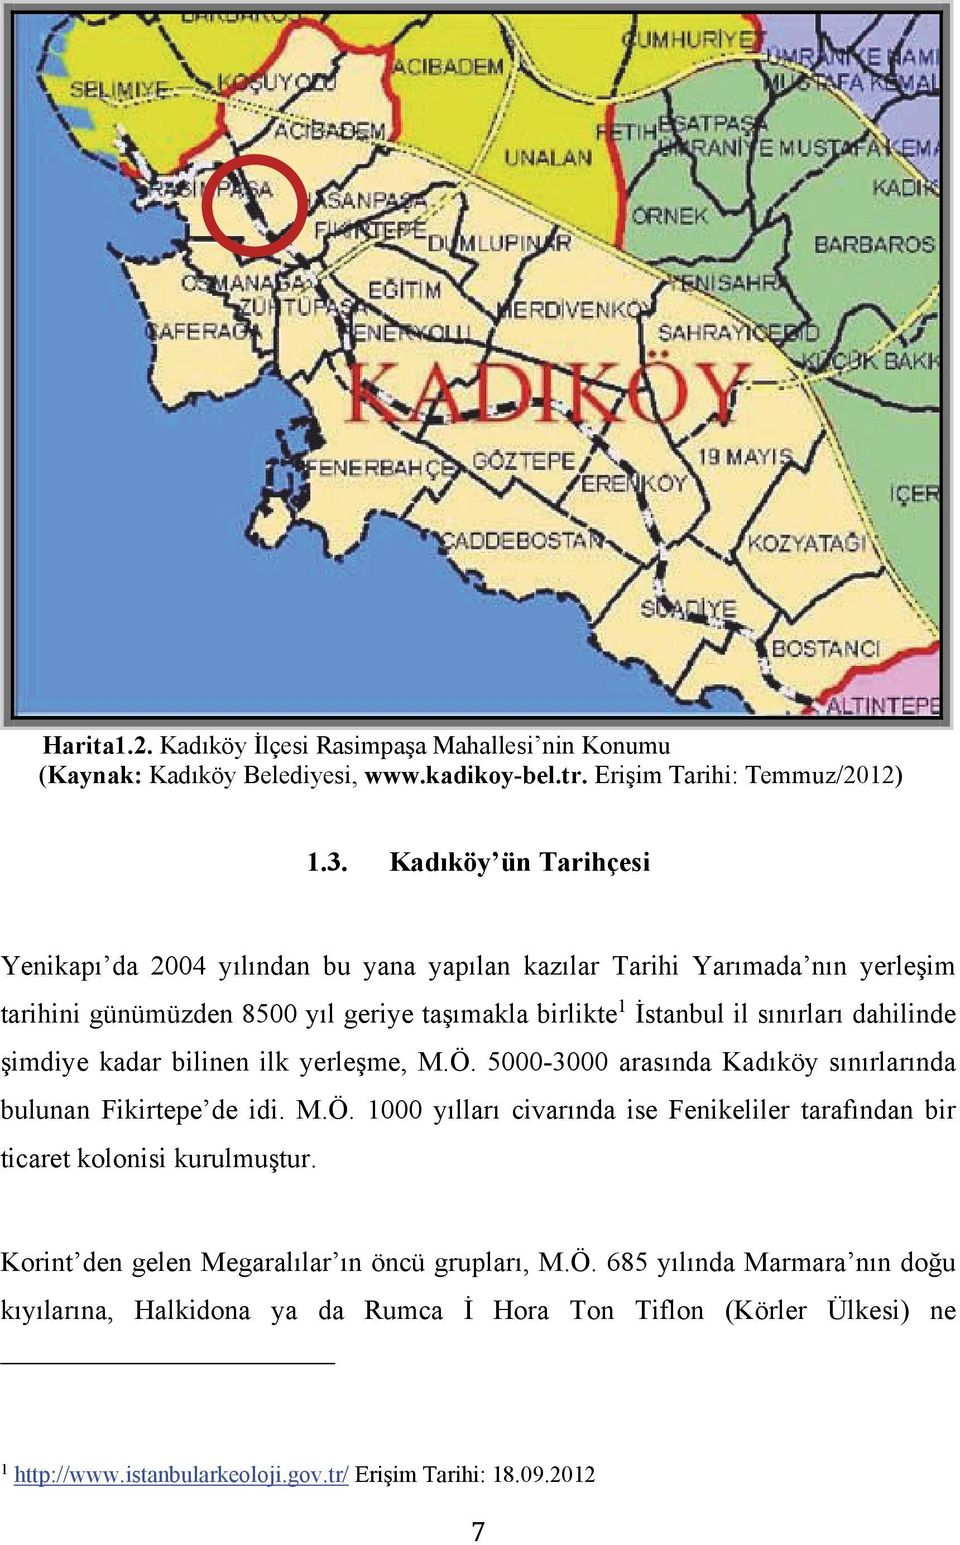 dahilinde şimdiye kadar bilinen ilk yerleşme, M.Ö. 5000-3000 arasında Kadıköy sınırlarında bulunan Fikirtepe de idi. M.Ö. 1000 yılları civarında ise Fenikeliler tarafından bir ticaret kolonisi kurulmuştur.